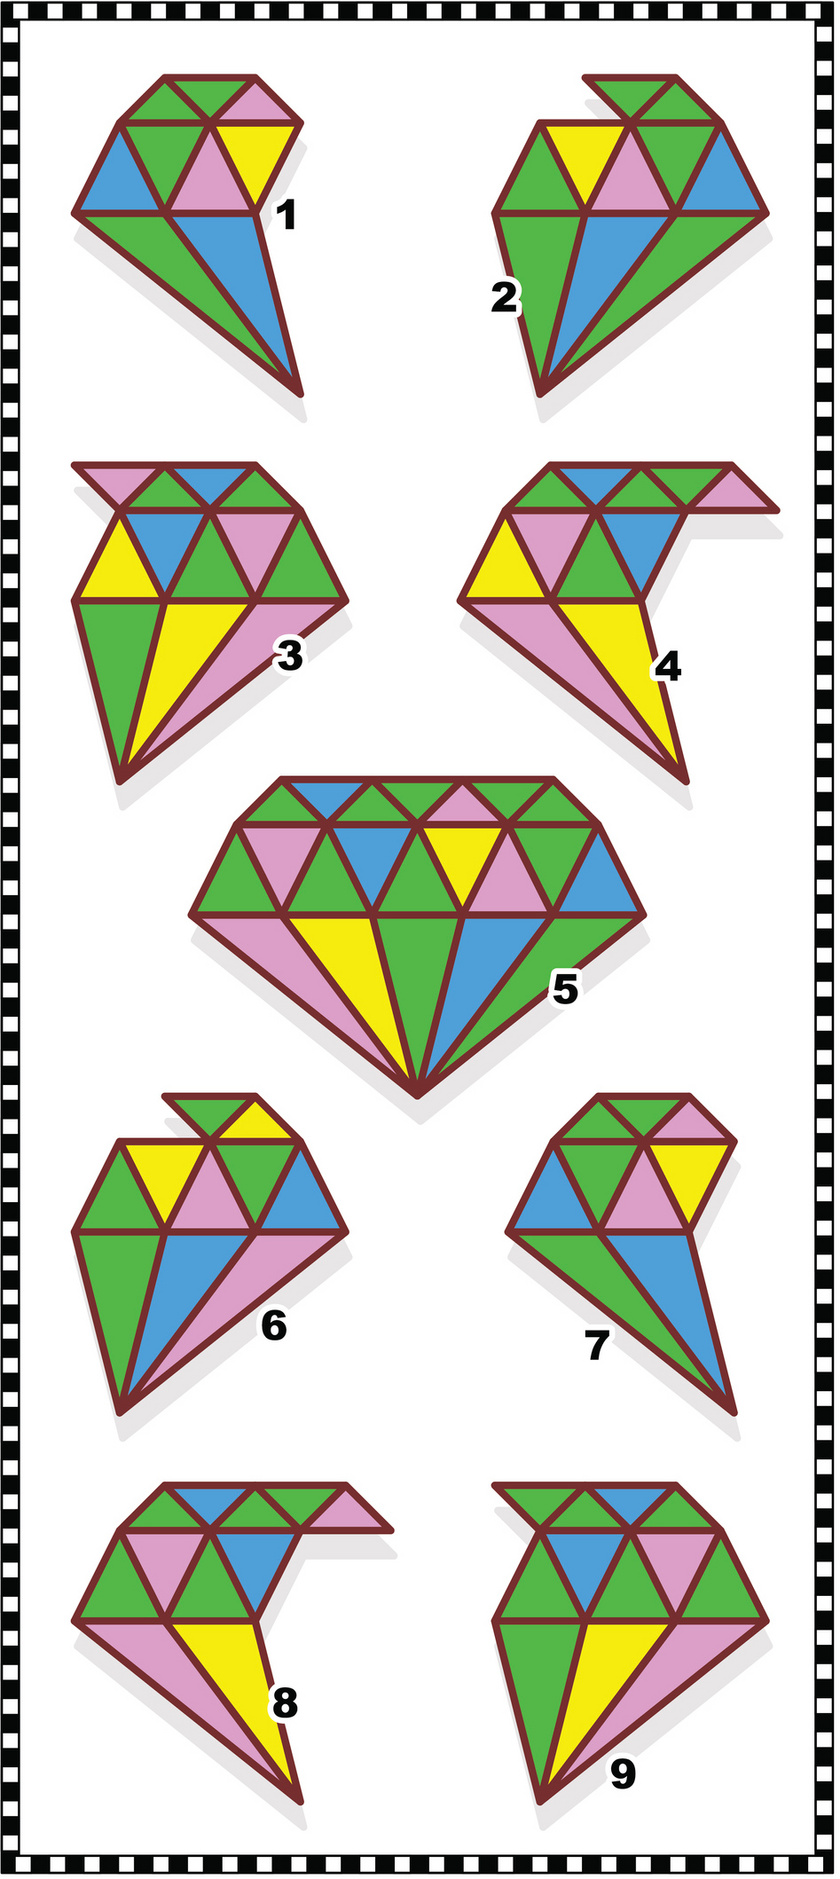 Az 5-ös ábrán látható gyémánt melyik két darabból áll össze? A megoldáshoz görgess tovább!